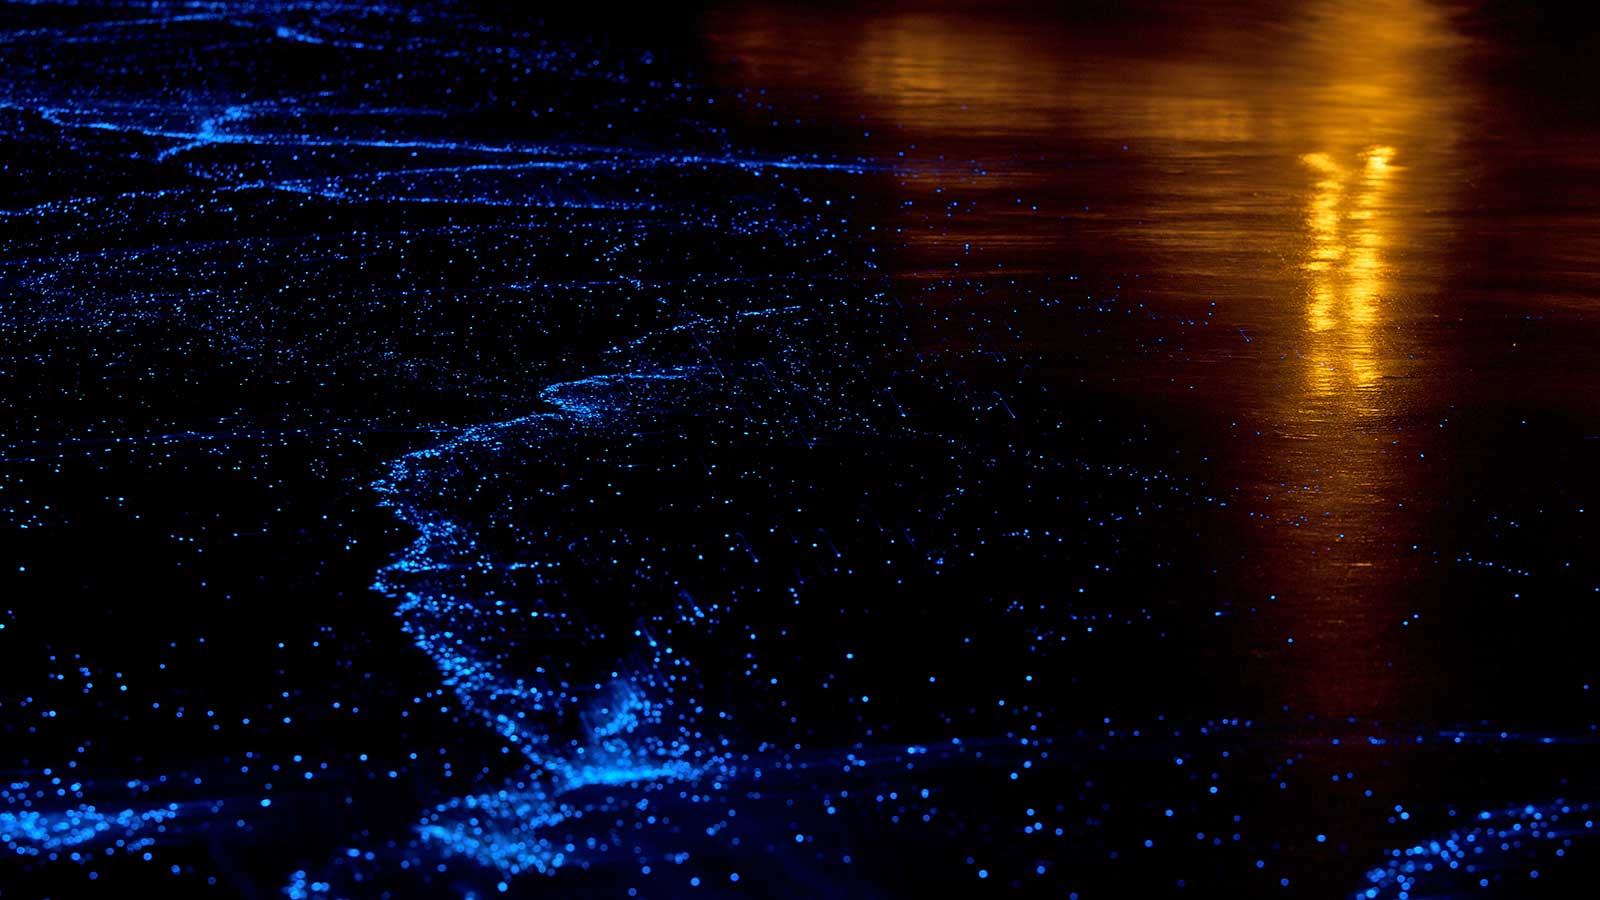 Sea of Stars Plankton in Maldives with TMA